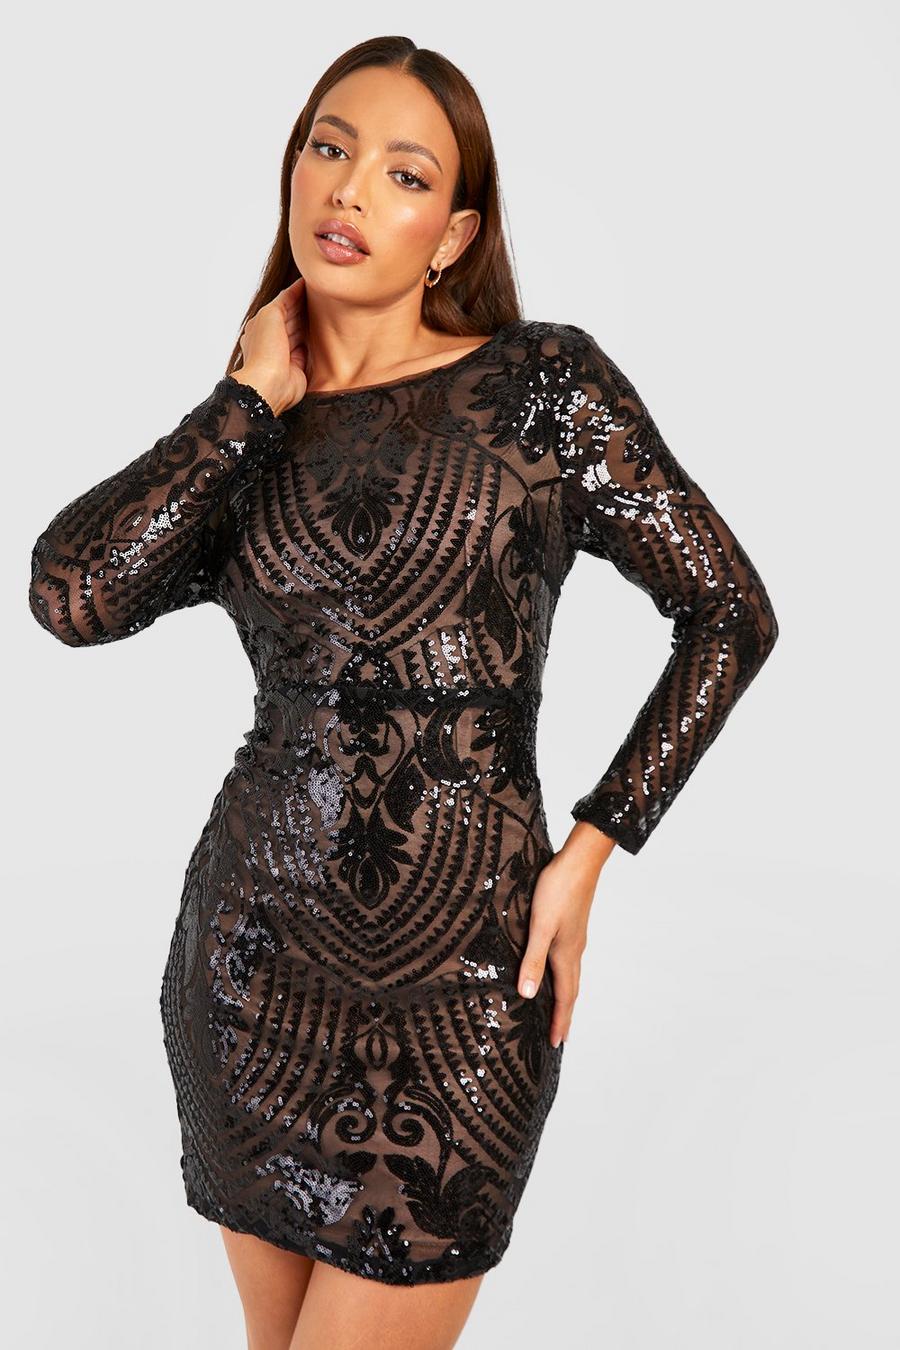 שחור nero שמלת מיני מבד דמשק עם פייטים ומחשוף גב נשפך, לנשים גבוהות